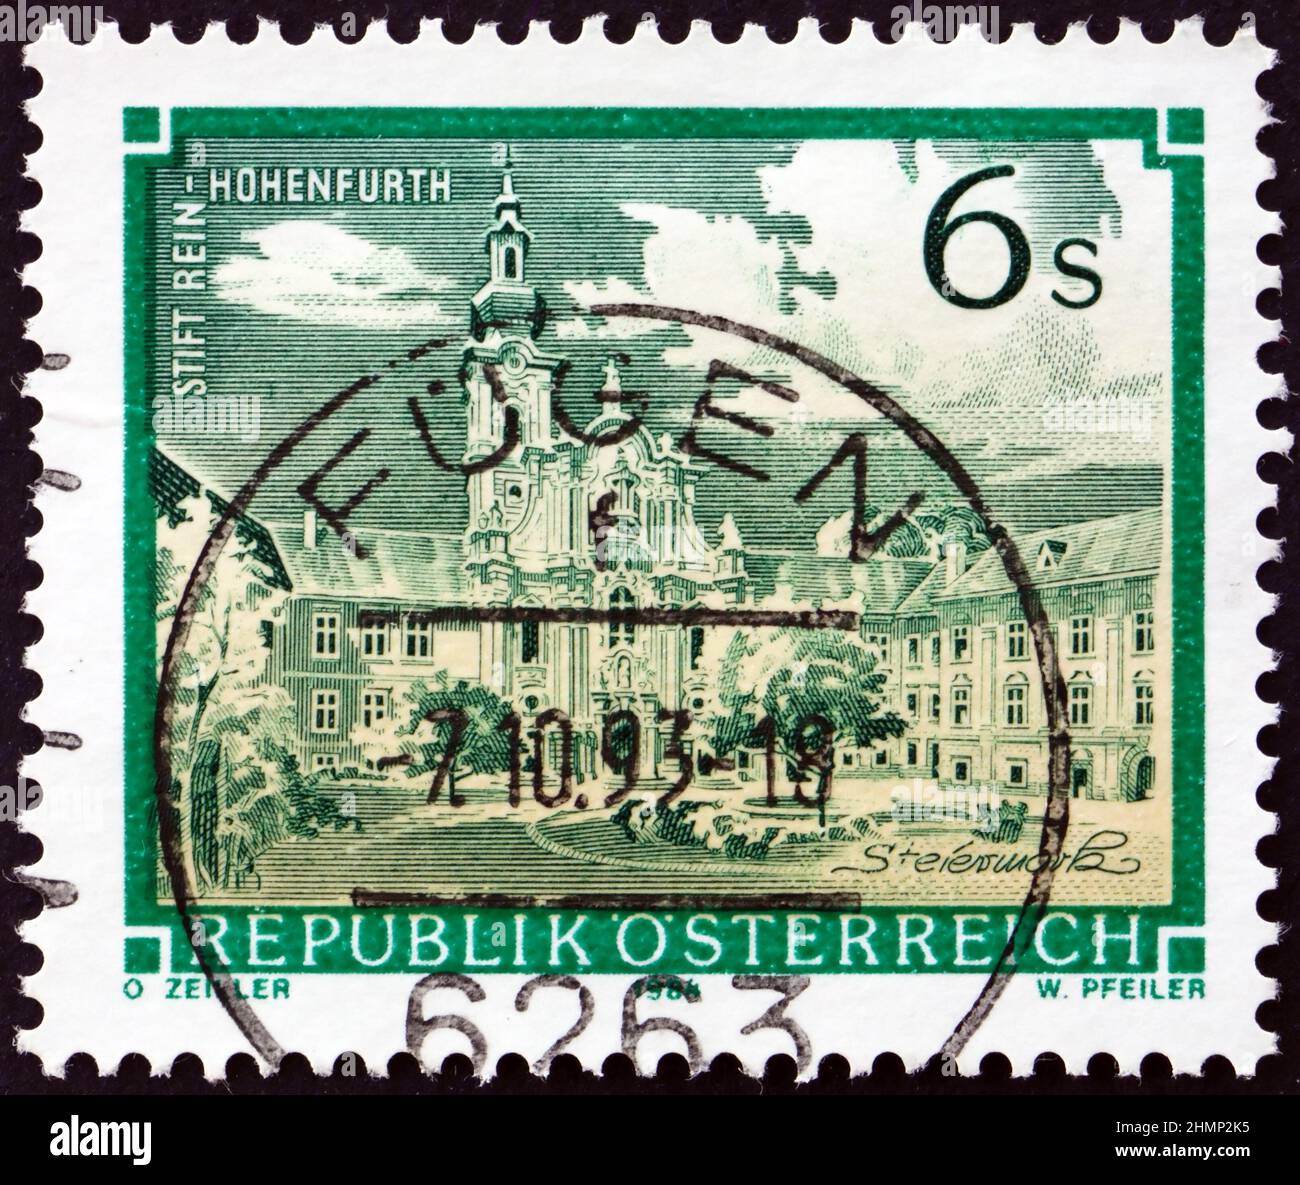 ÖSTERREICH - UM 1984: Eine in Österreich gedruckte Briefmarke zeigt die Abtei rein-Hohenfurth, um 1984 Stockfoto